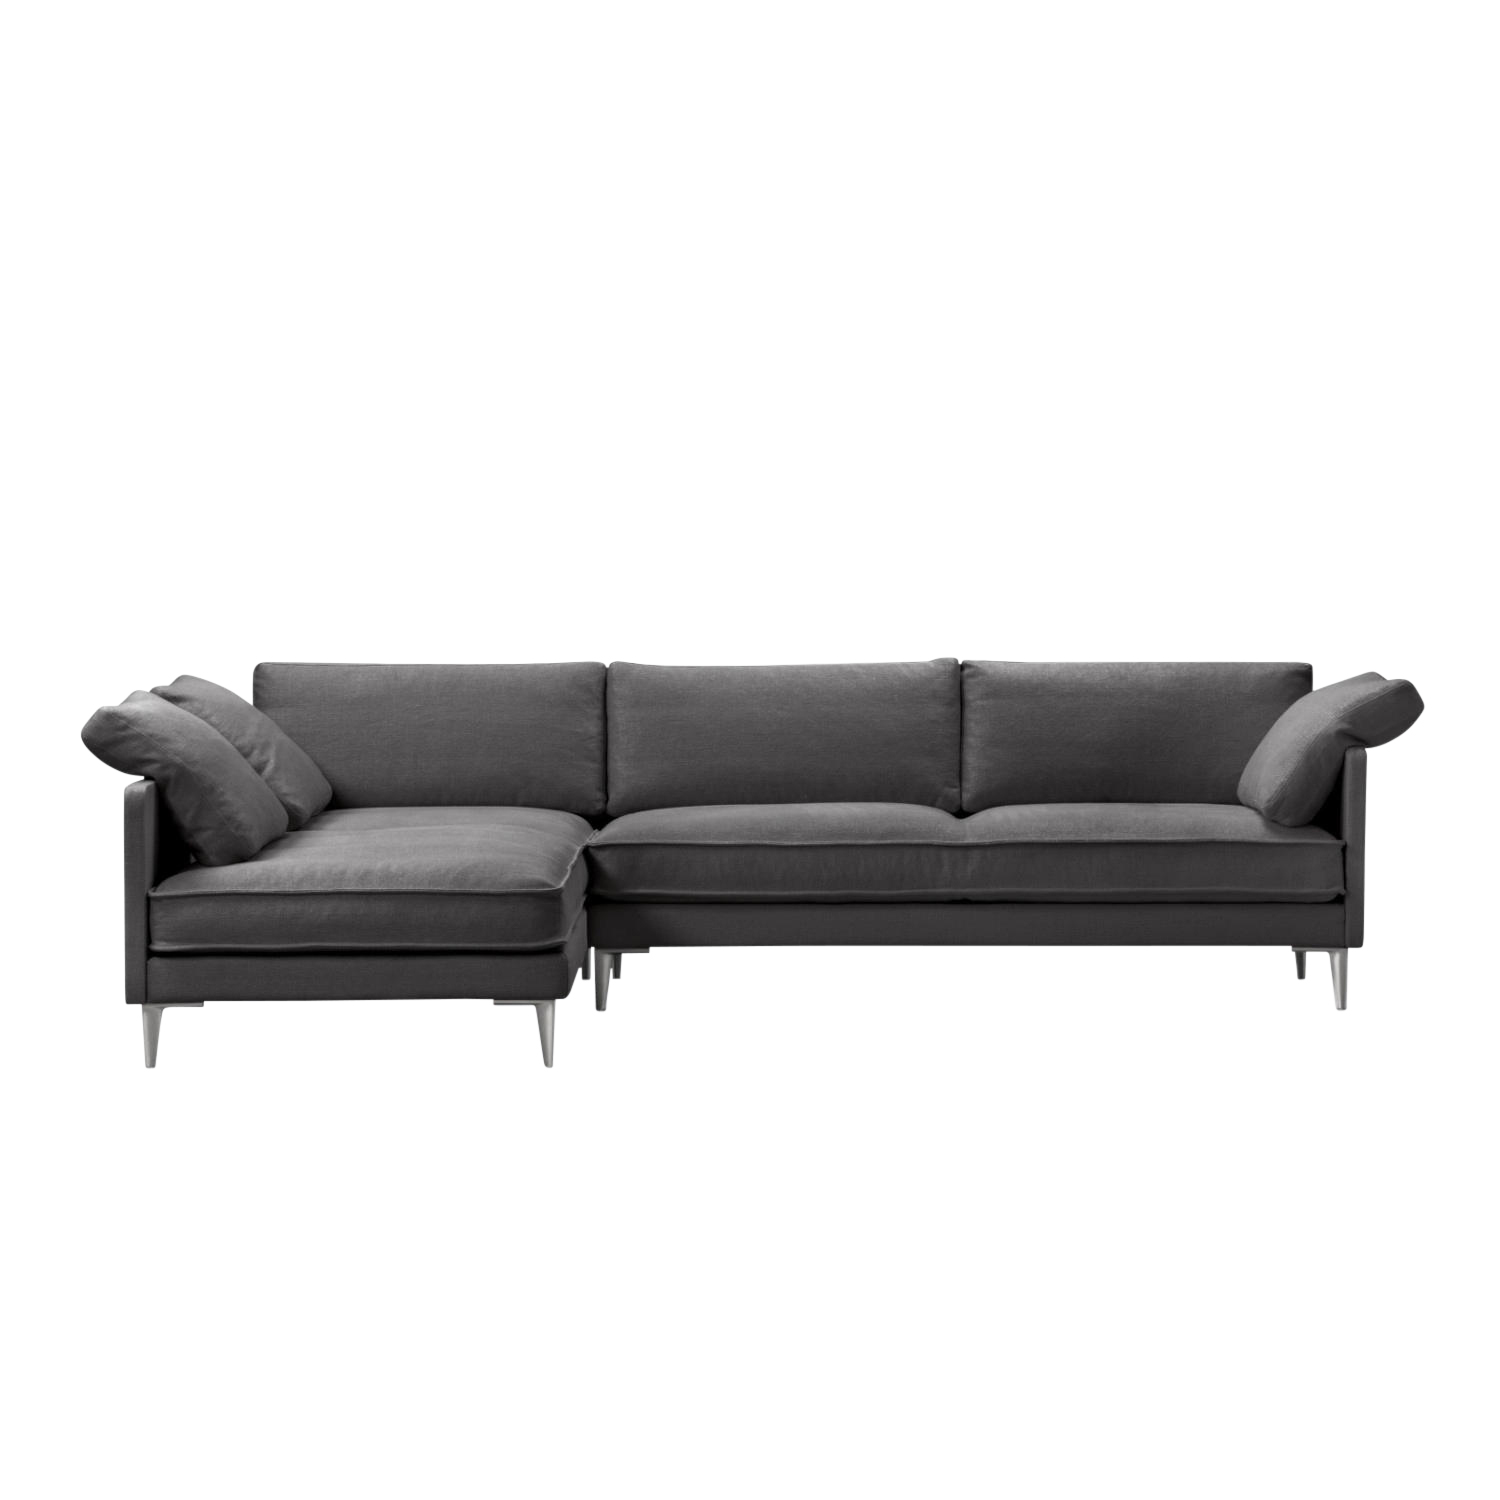 EJ295 Chaise 3er Stoff-Sofa, Bezug stoff remix3 - 123 cool grey, Grösse b. 240 cm, Chaiselounge rechts (vor dem sofa stehend), Beine chrome von Fredericia